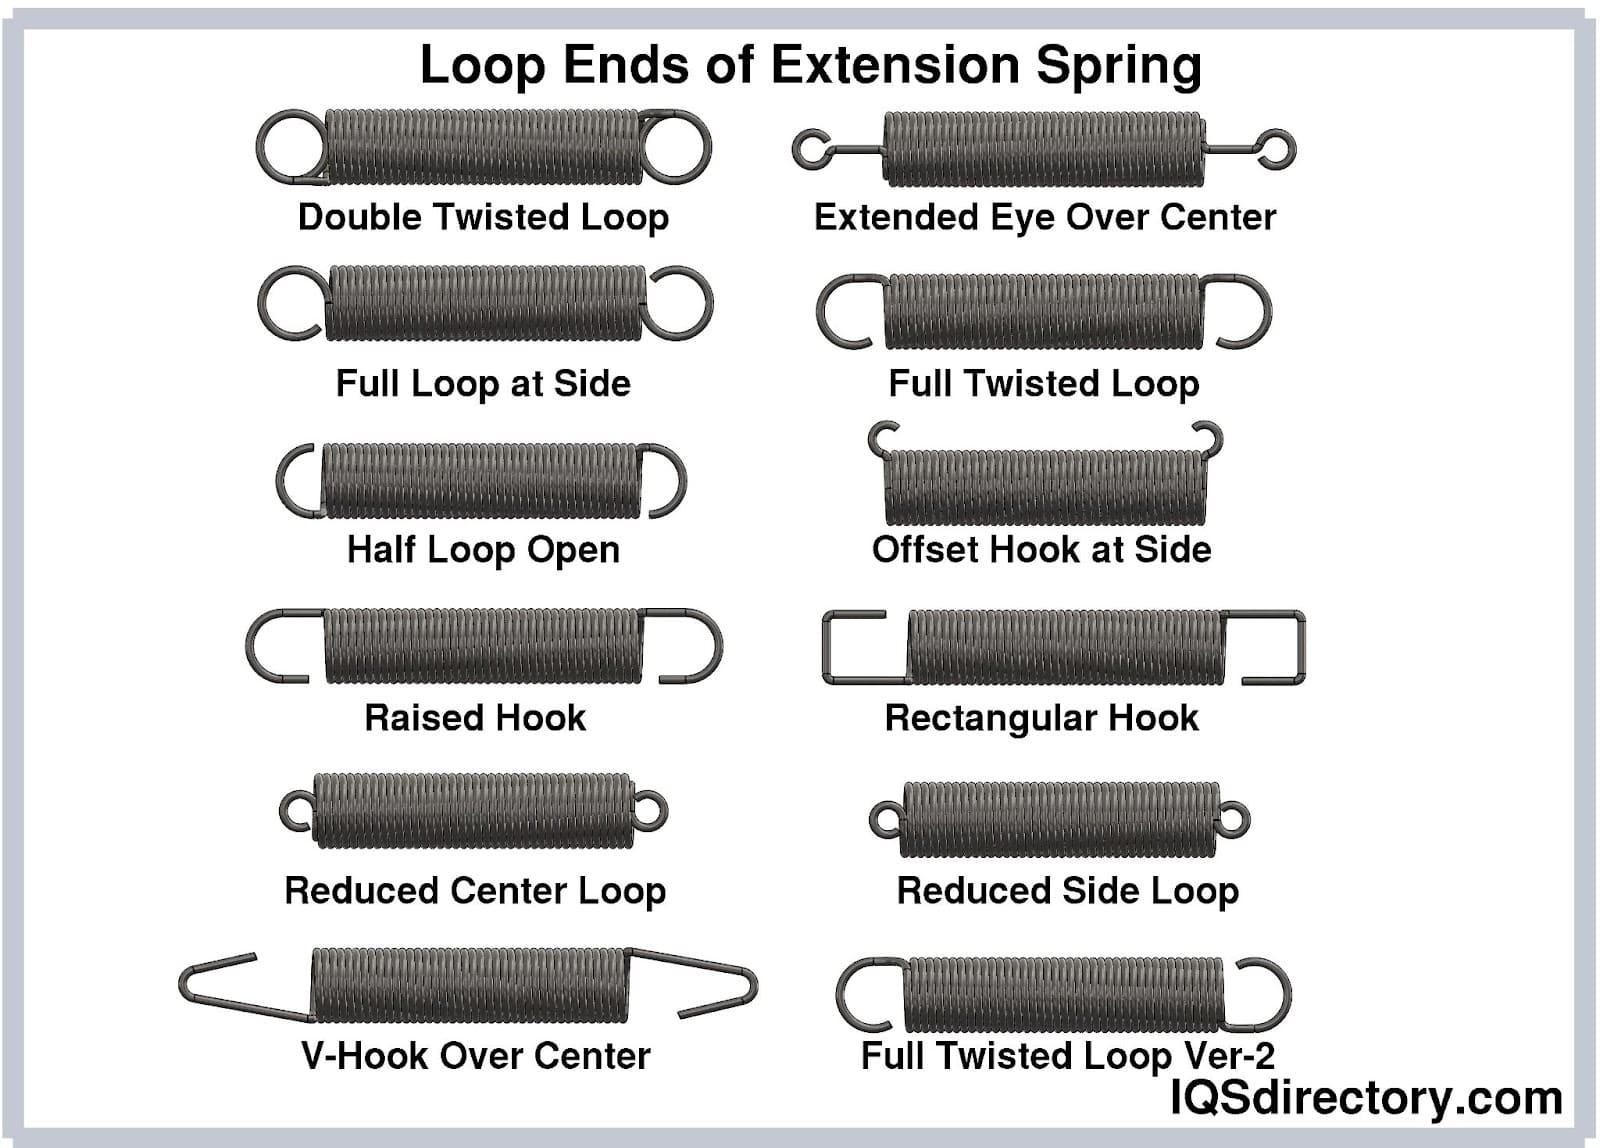 Loop Ends of Extension Spring